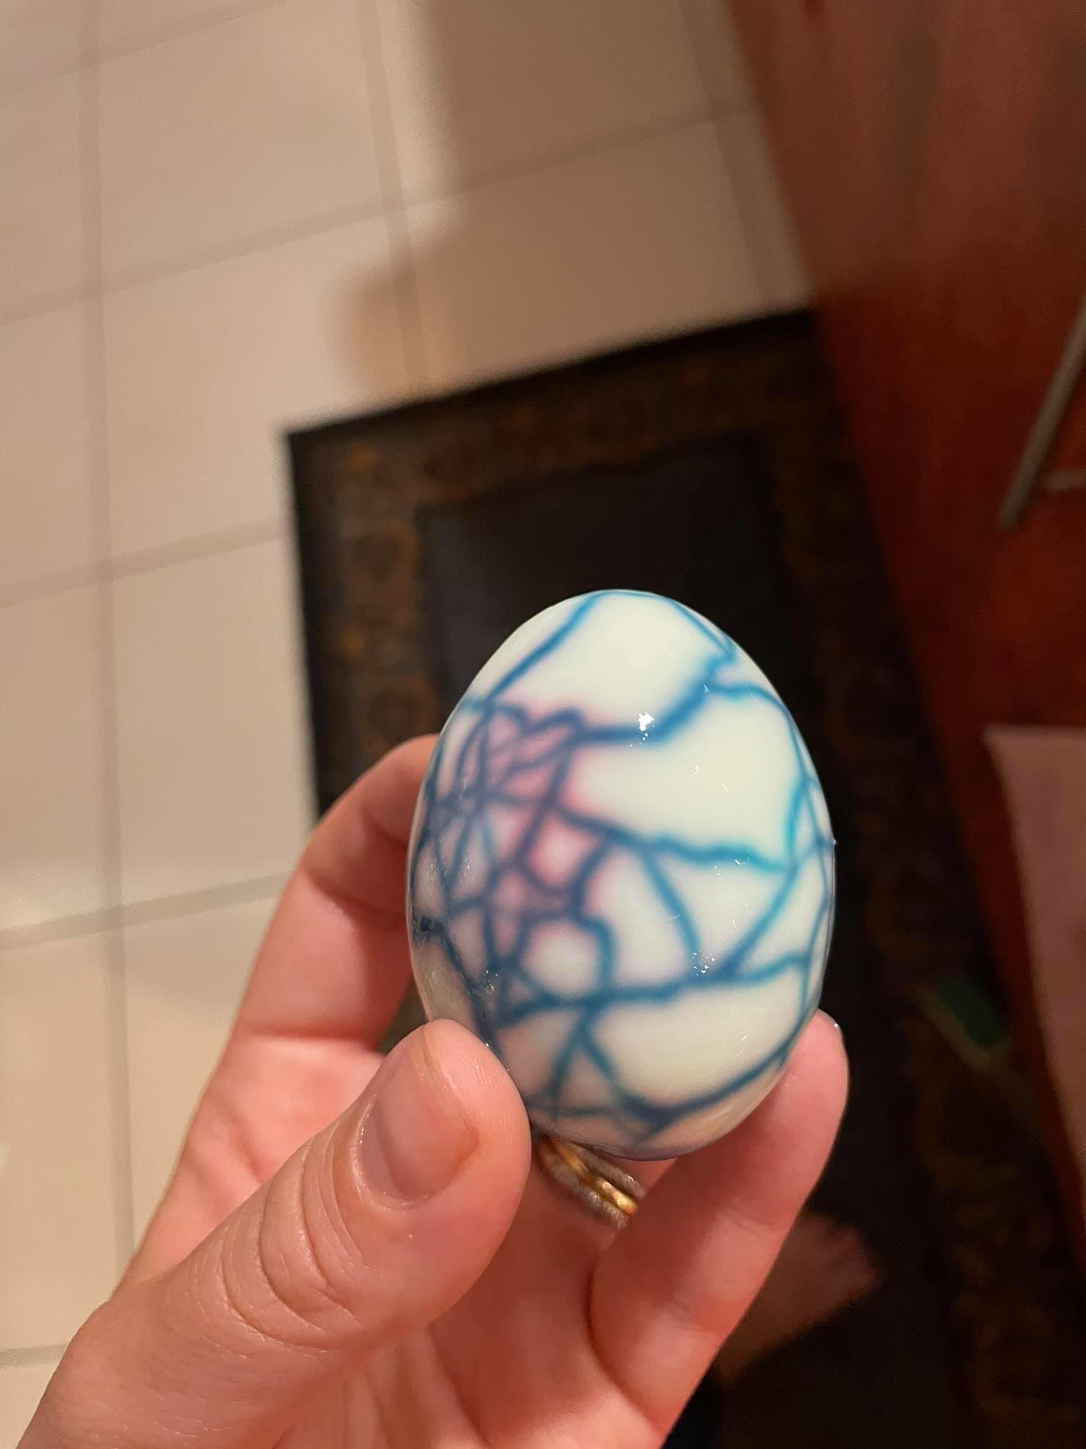 Блогер показала лайфхак с яйцом и сломала россиян. Гениальный трюк иностранцев для нас - худшая ошибка в Пасху